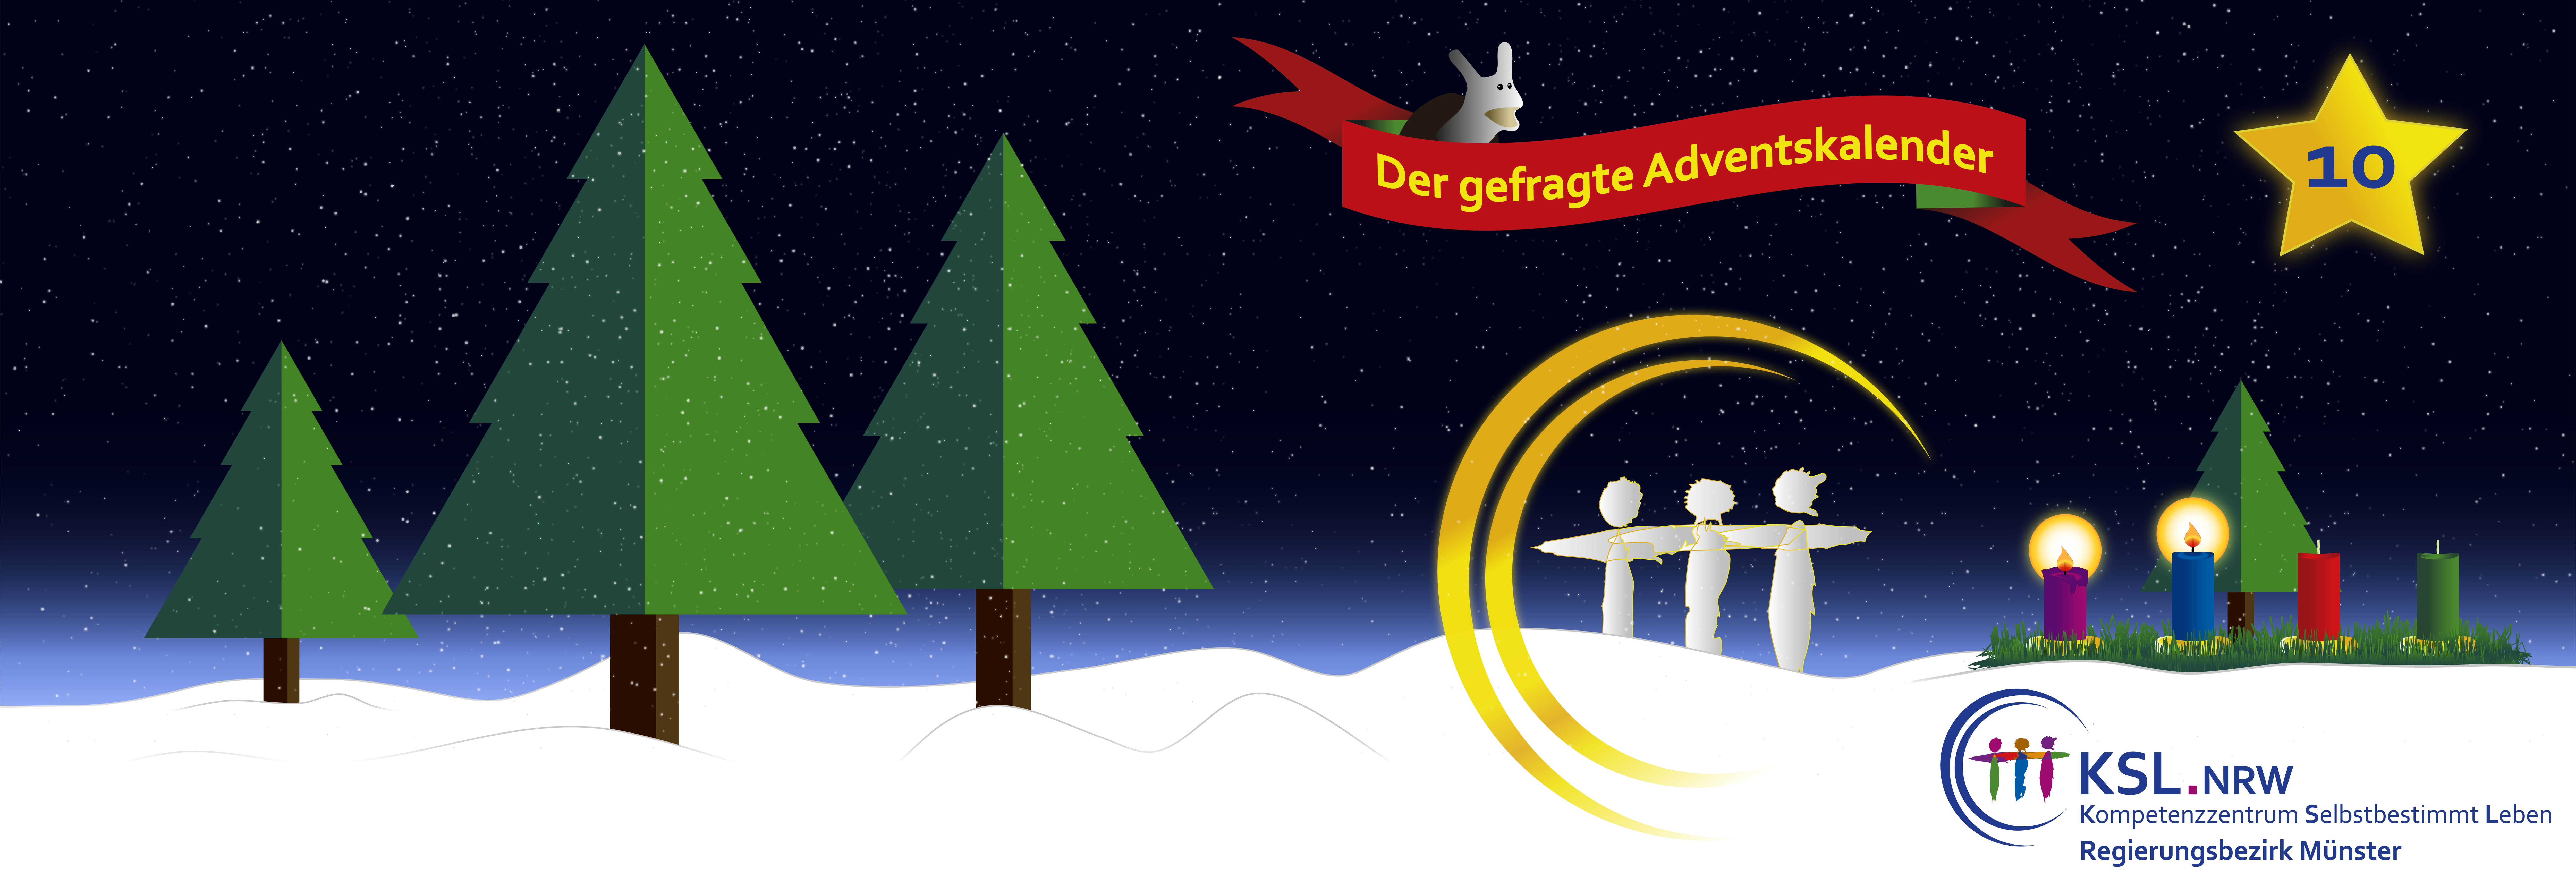 Der gefragte Adventskalender - KSL Münster - weihnachtlicher Hintergrund - vier Tannenbäume- ein Stern mit der Nummer 10 - ein Adventskranz mit vier Kerzen